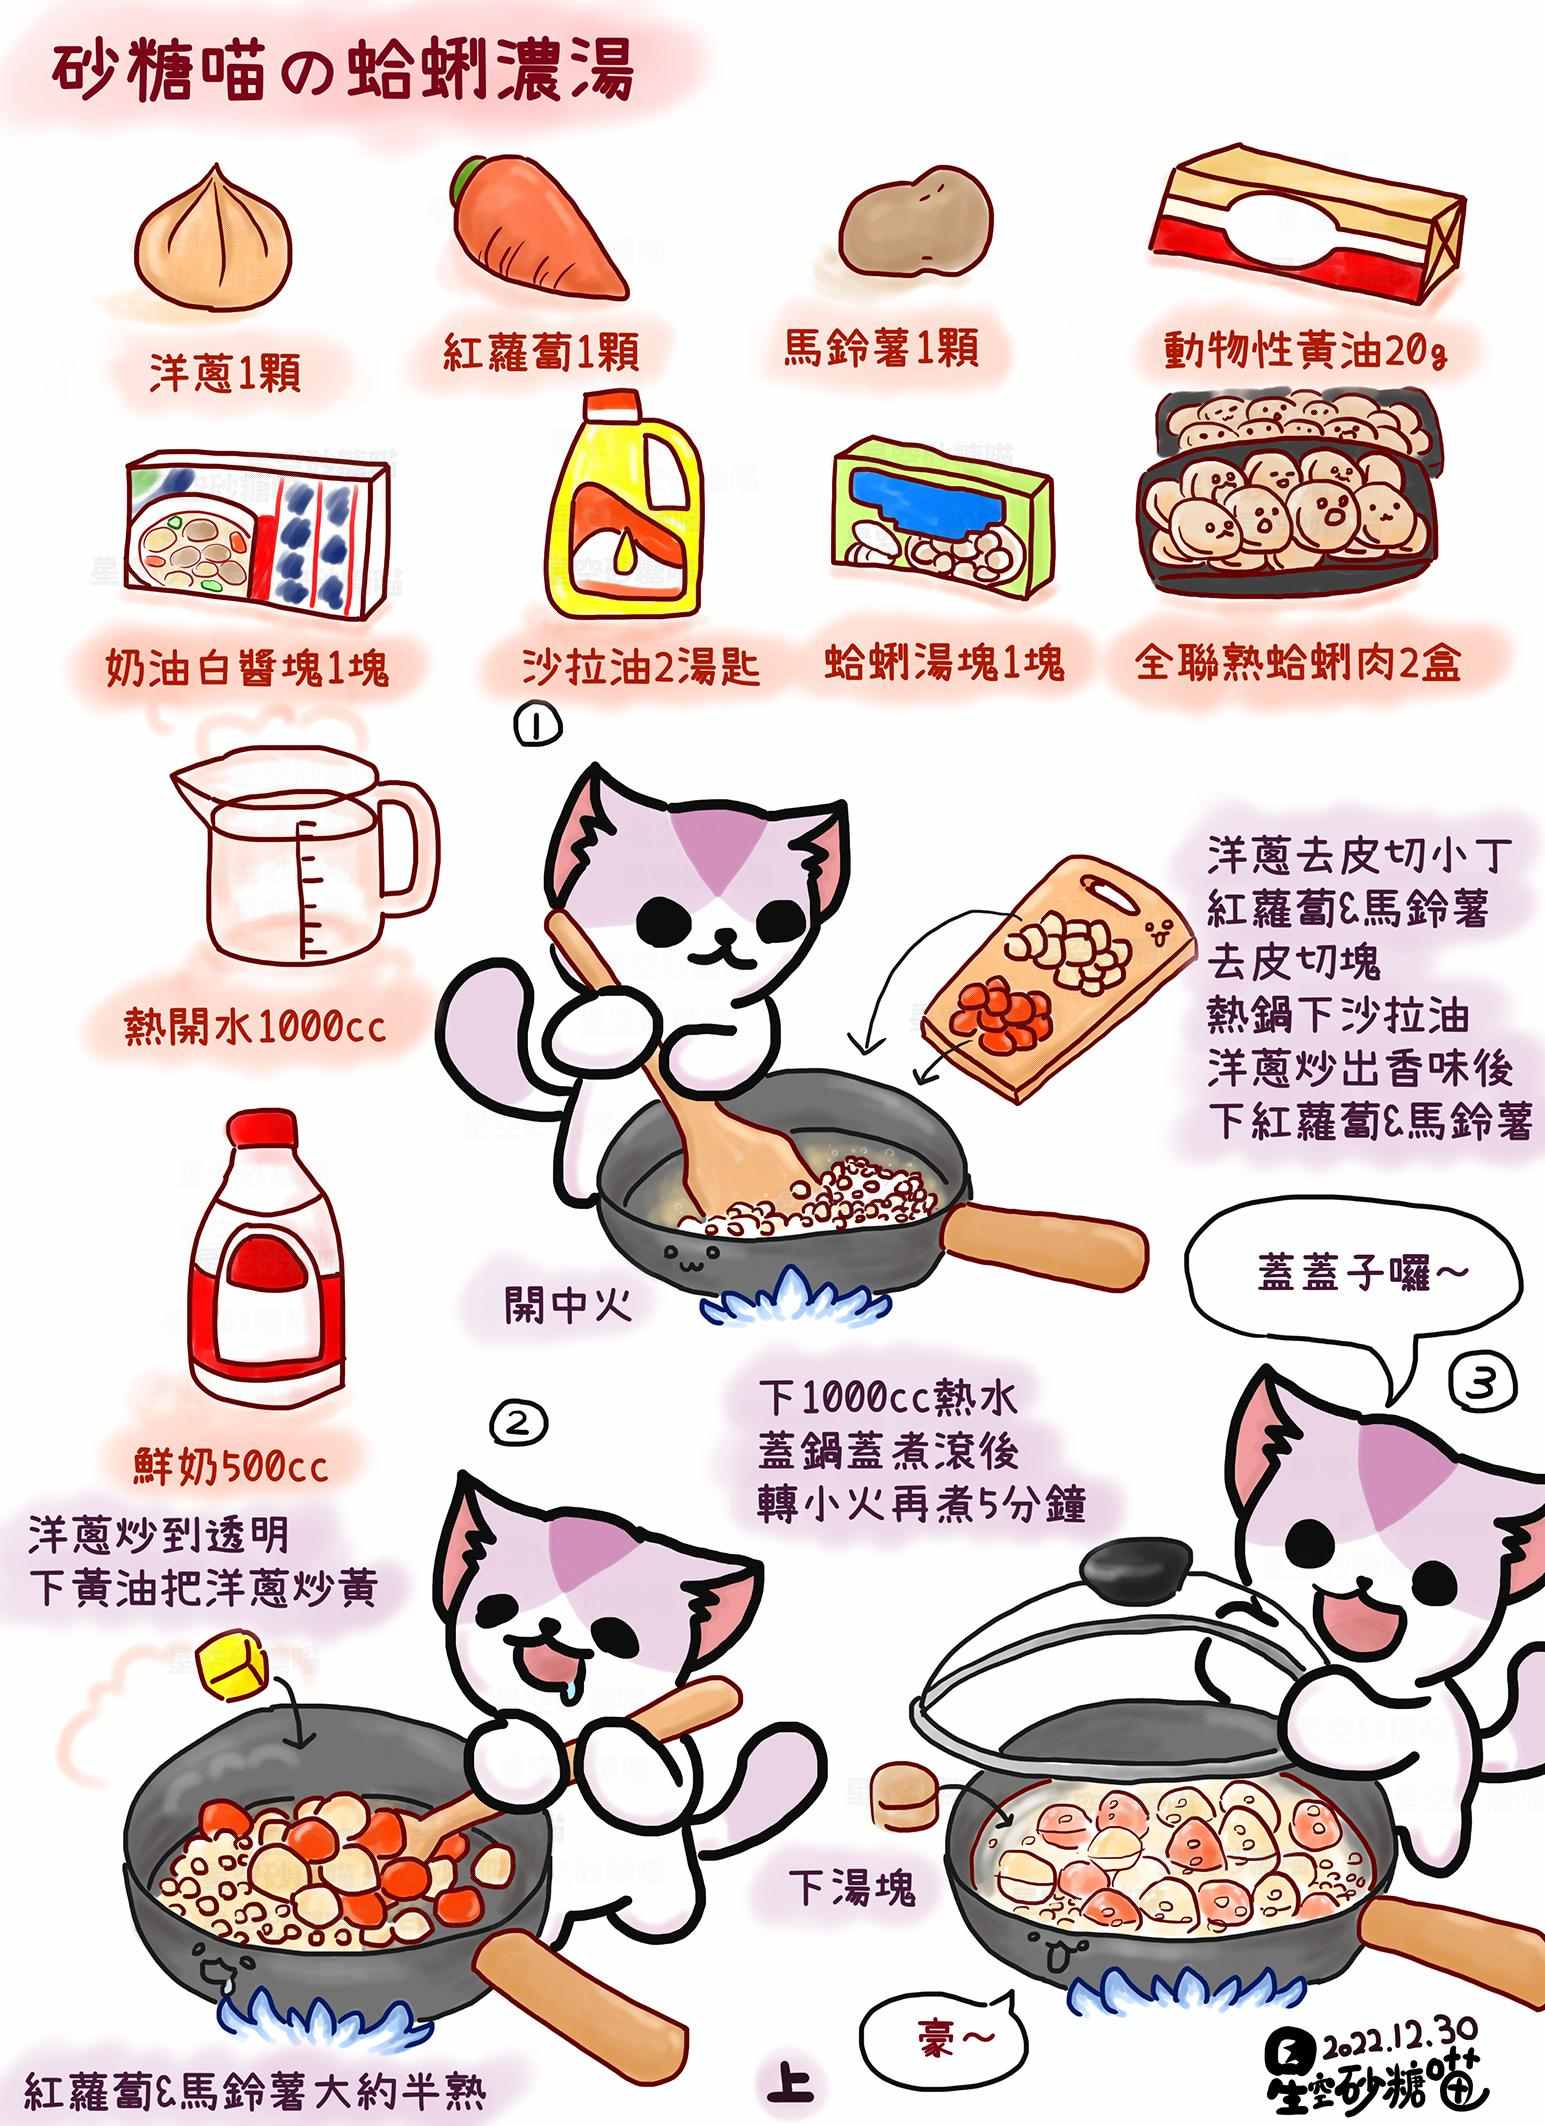 Gato 熱湯